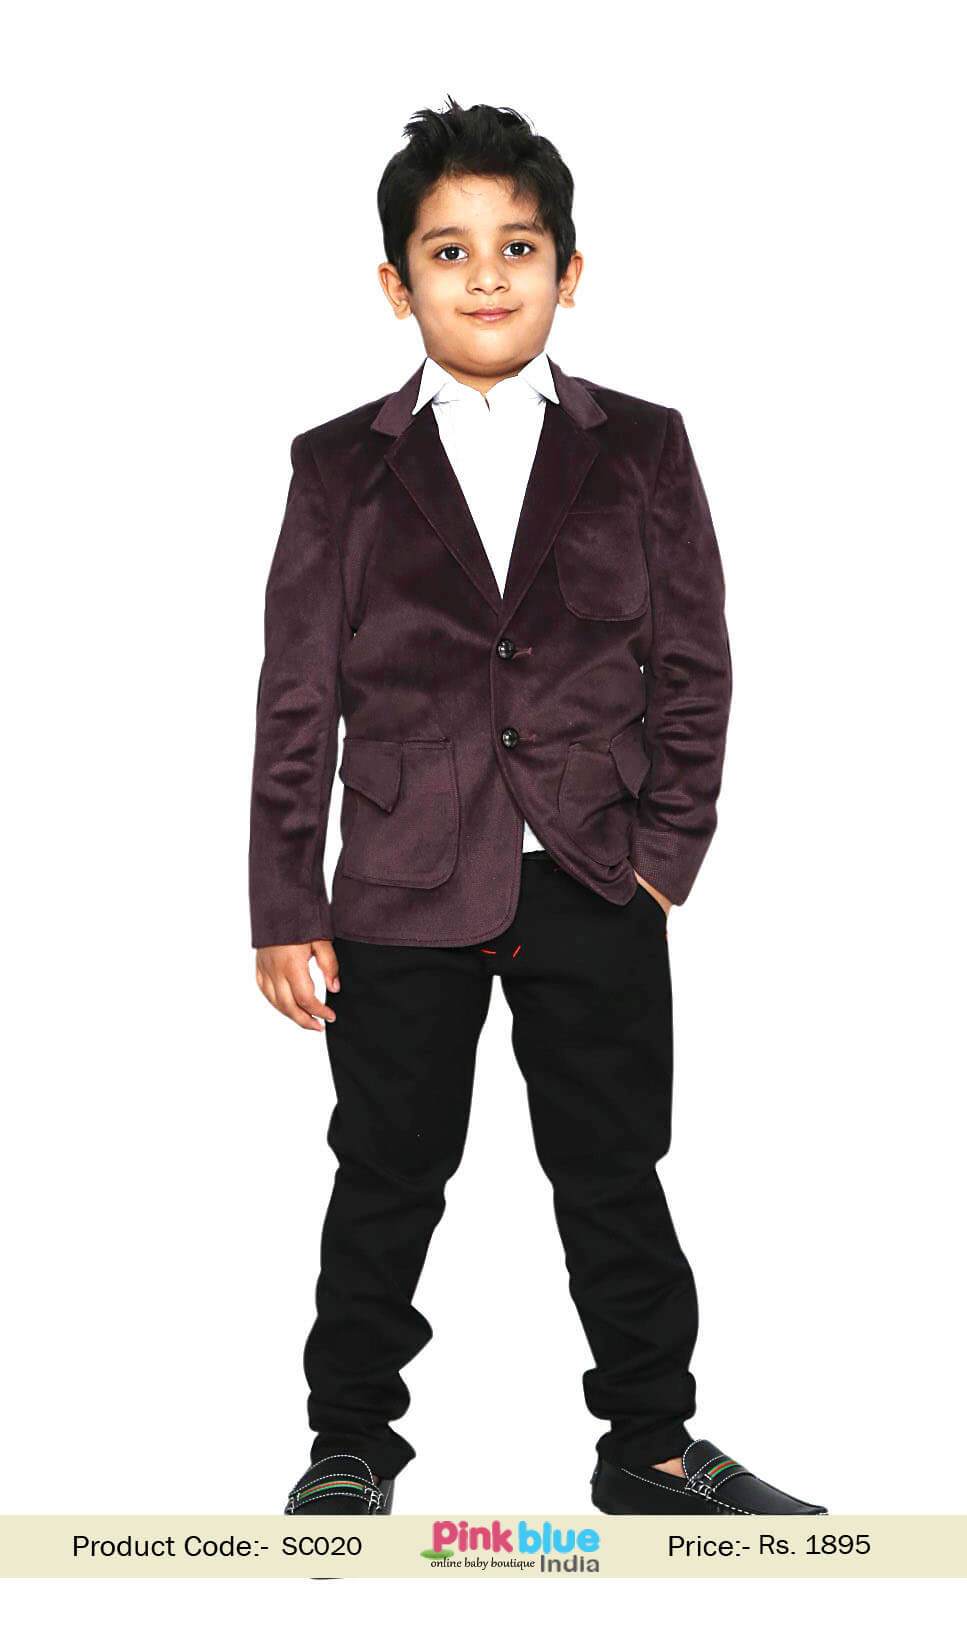 3pcs Kids Boy Formal Wedding Suit Vest+Shirt+Pants Concert Party Wedding  Clothes | eBay